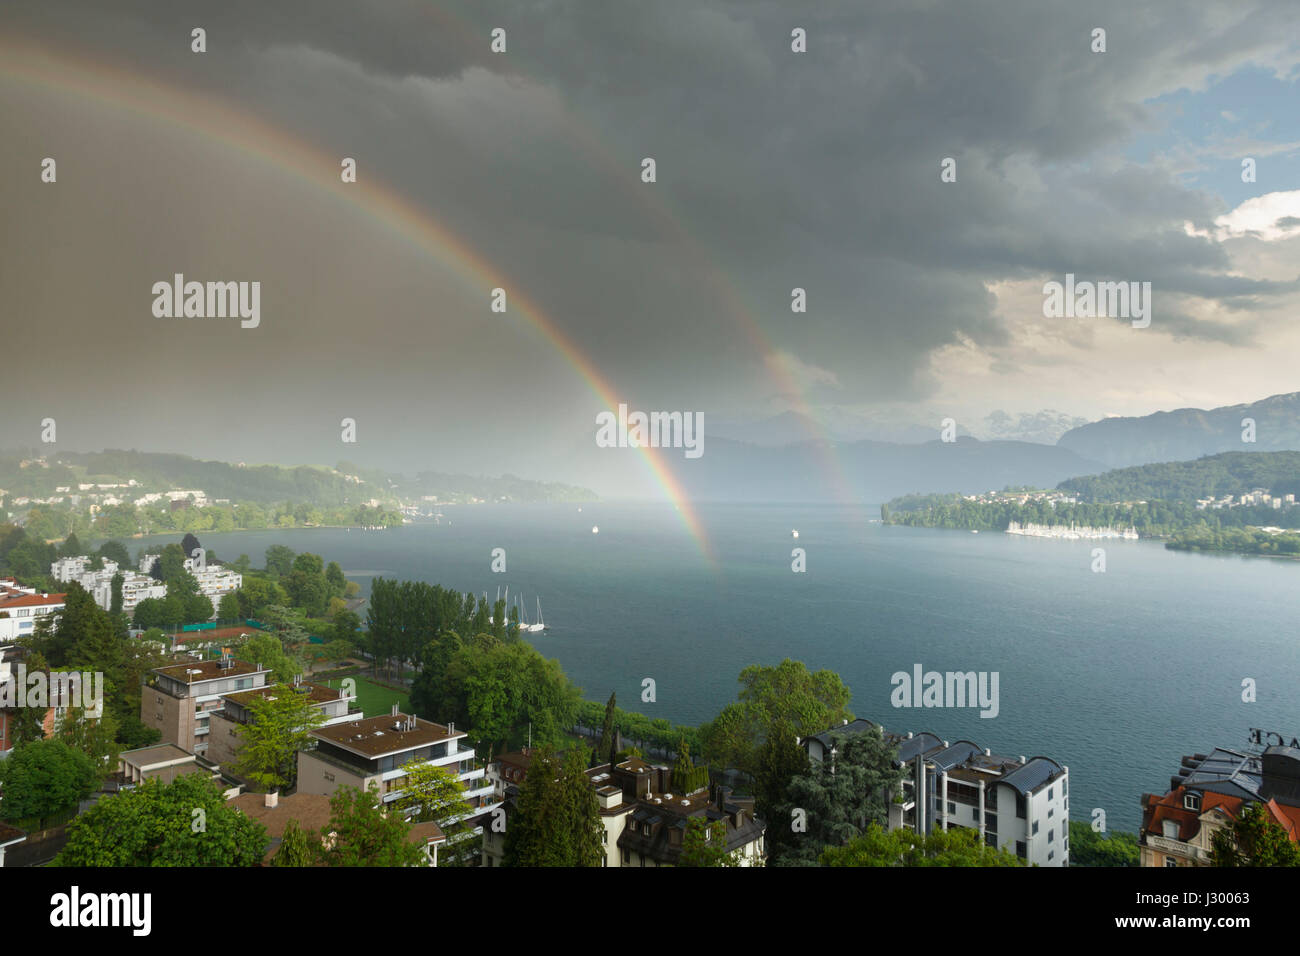 Thunder storm approaching over Lake Lucerne, Switzerland Stock Photo